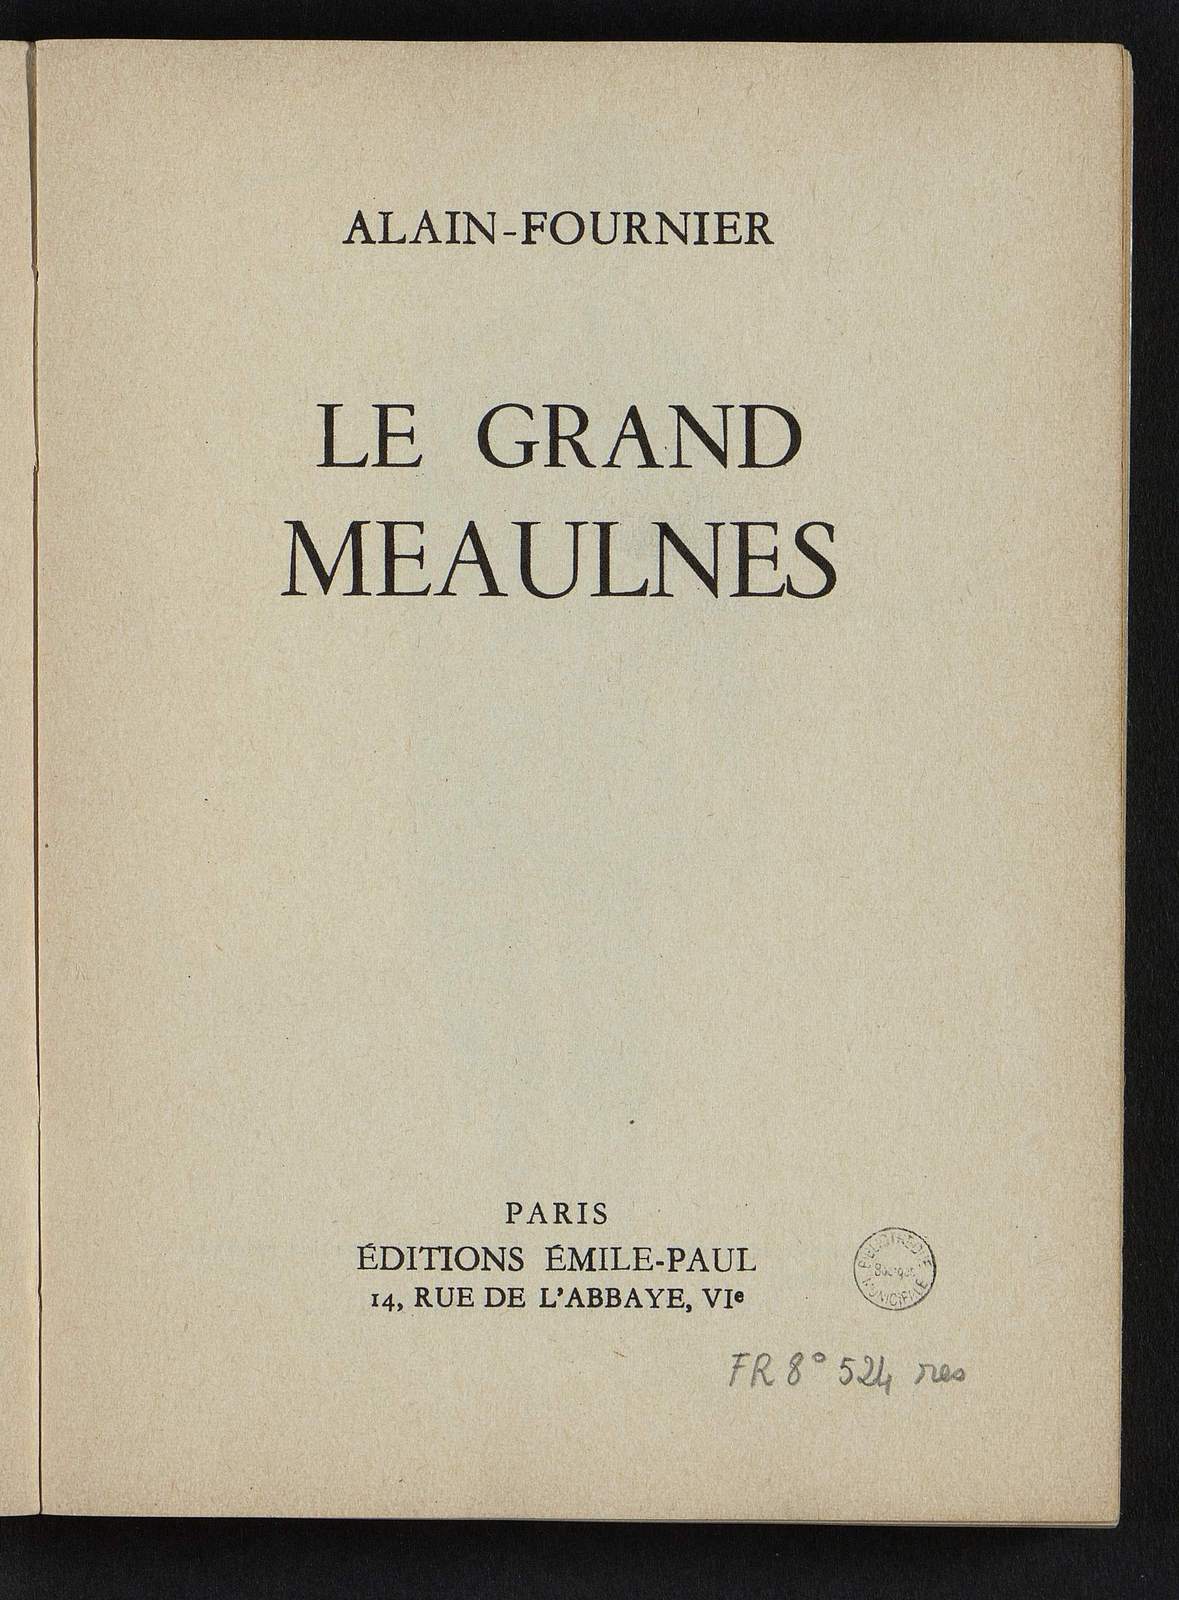 Le Grand Meaulnes, illustré par Laure Malcles, Emile-Paul Frères, 1960